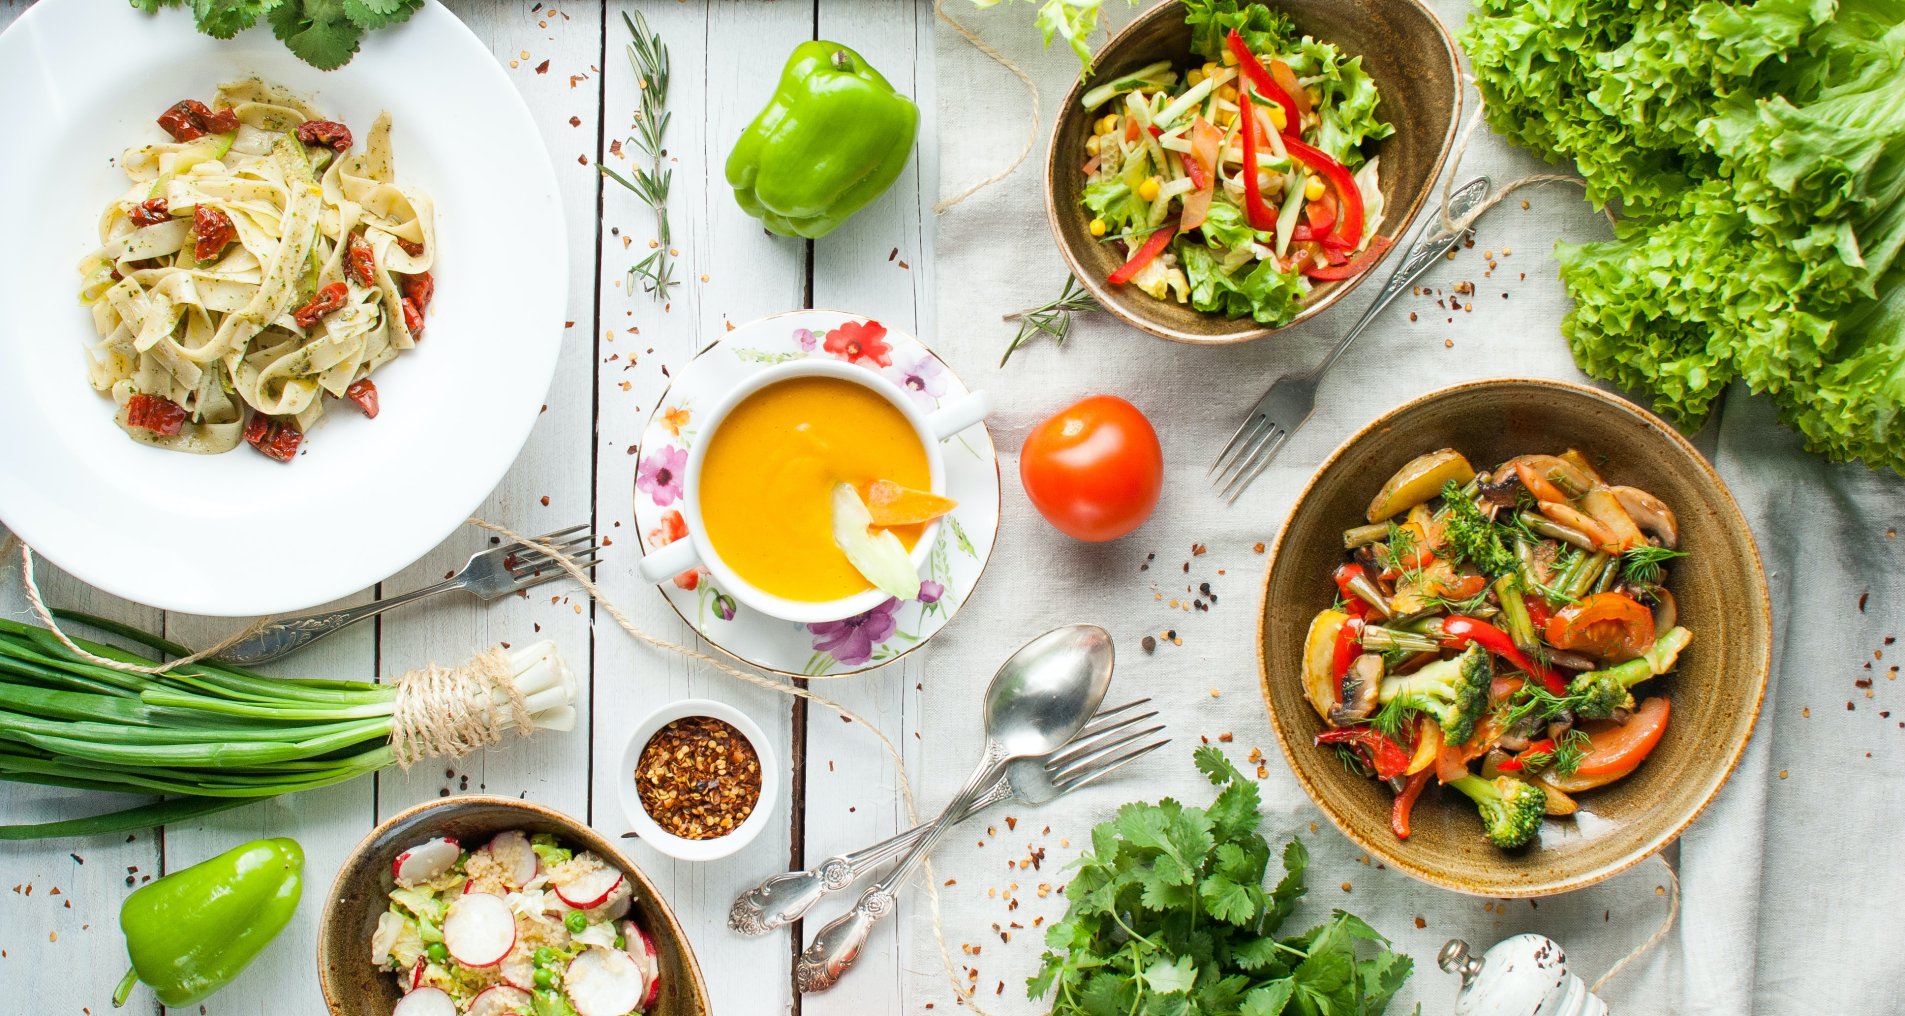 Диета с отрицательной калорийностью: рецепты блюд и советы экспертов